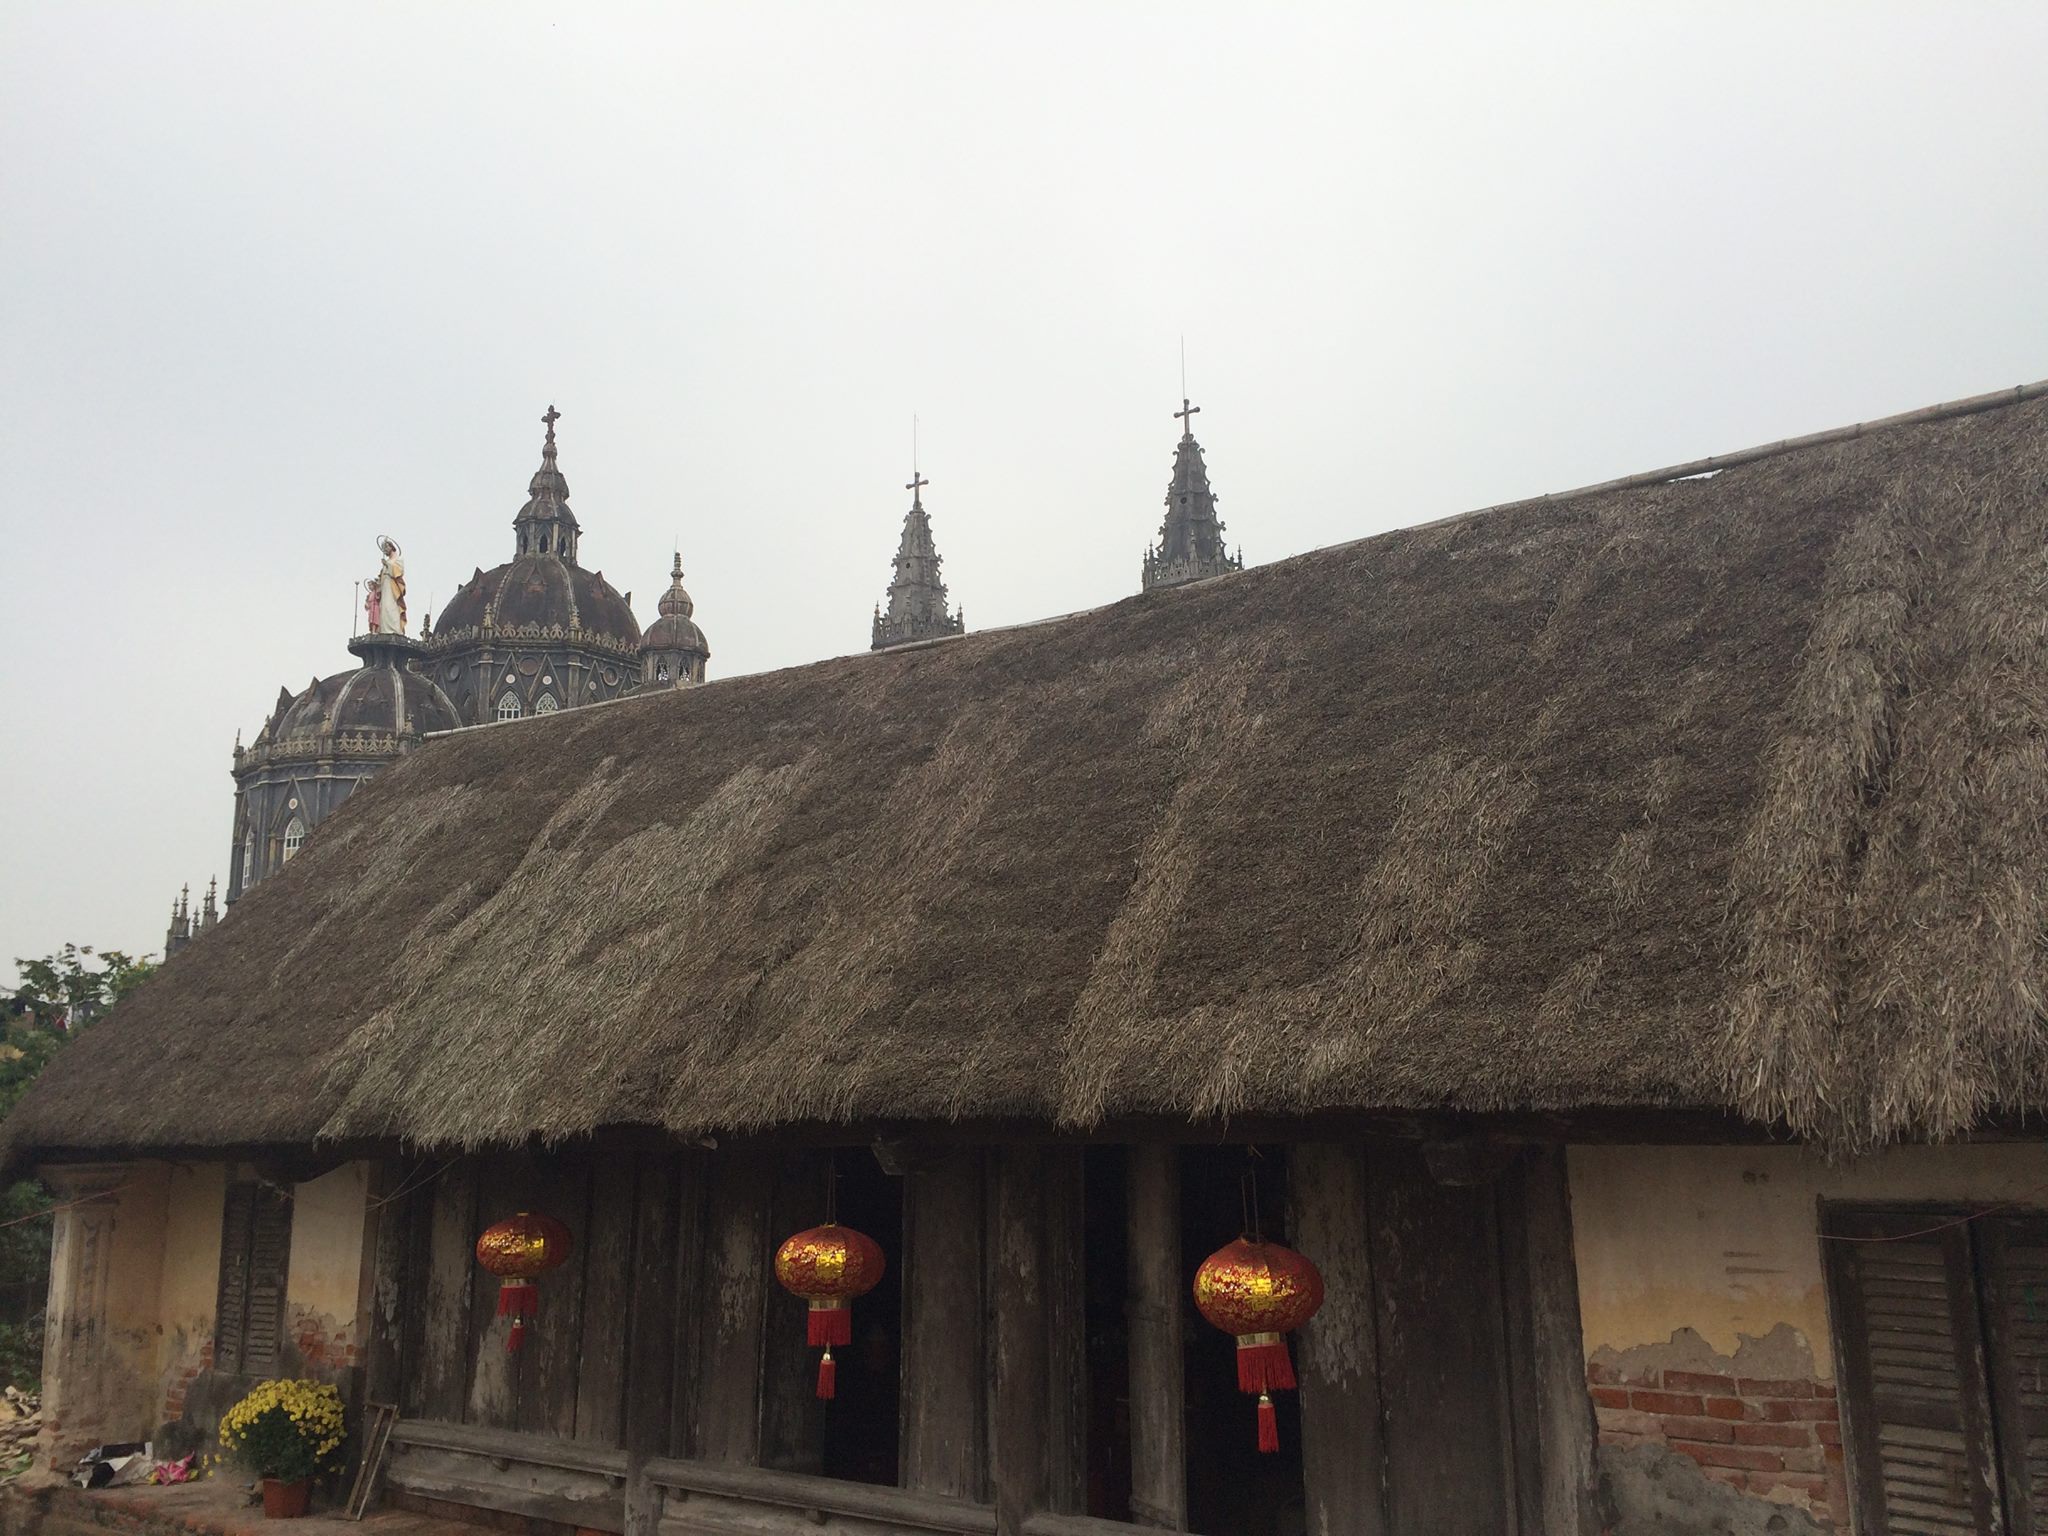 Cận cảnh nhà cổ trăm tuổi toàn bằng gỗ quý, đẹp hiếm có ở Nam Định - 1